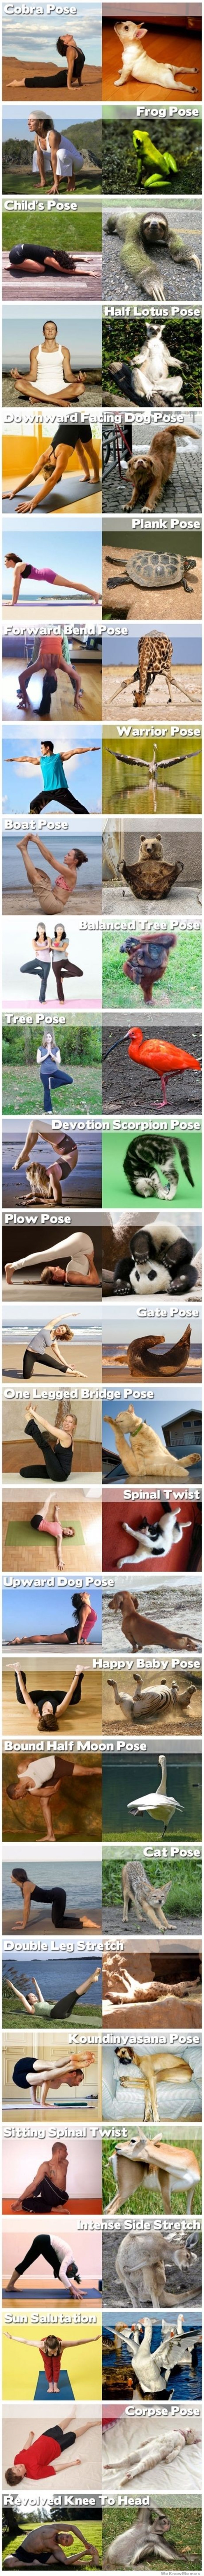 GALERIJA: Životinje su prirodni talenti za jogu!